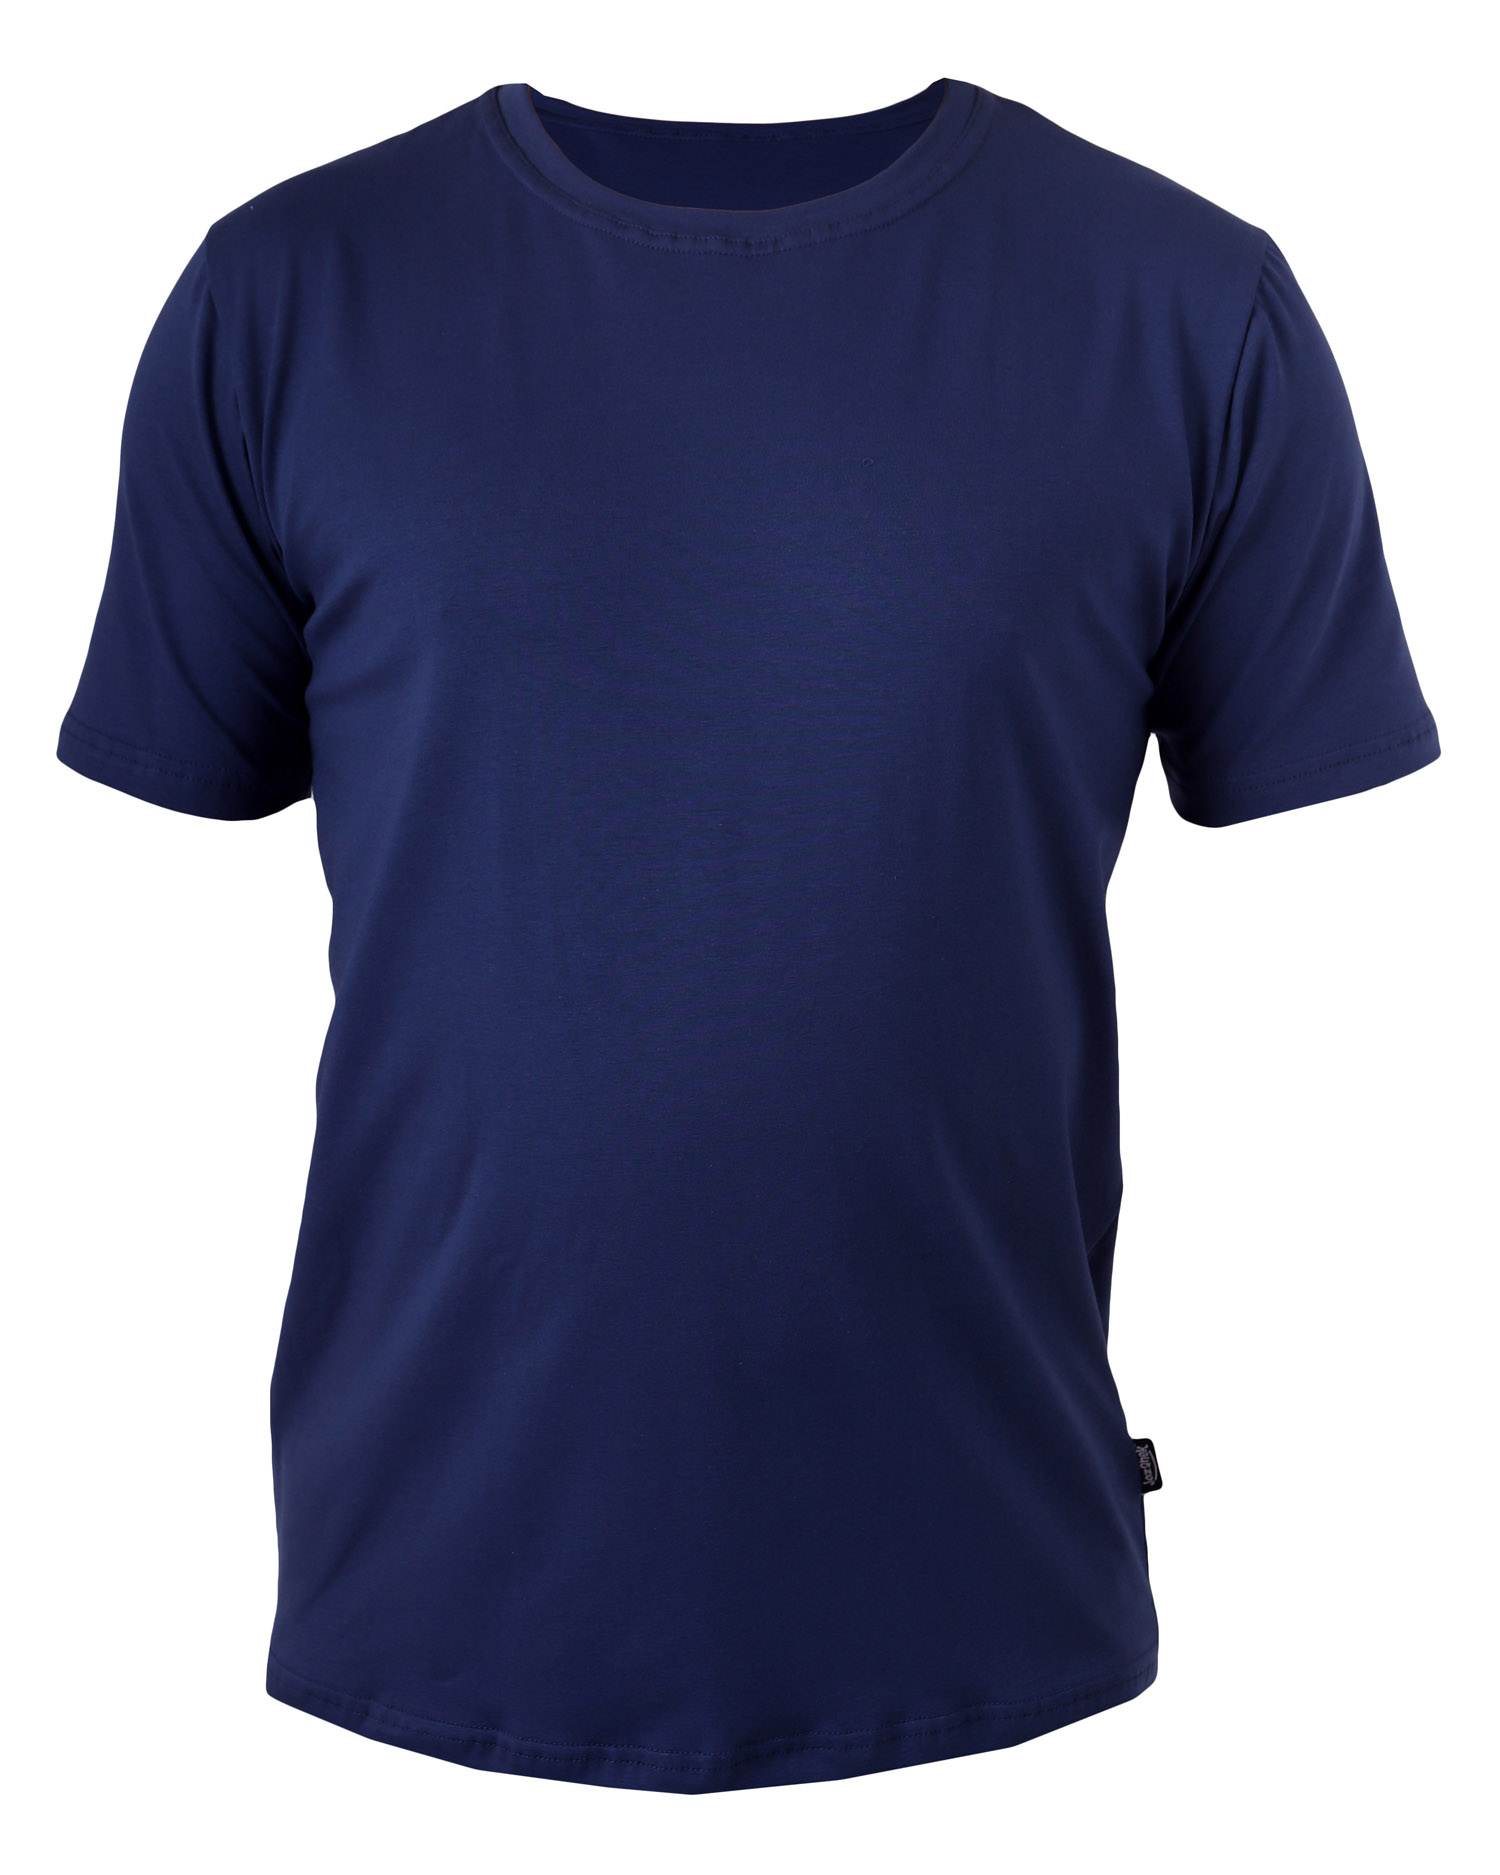 Pánske tričko Marek, L, 2. akosť č. 697